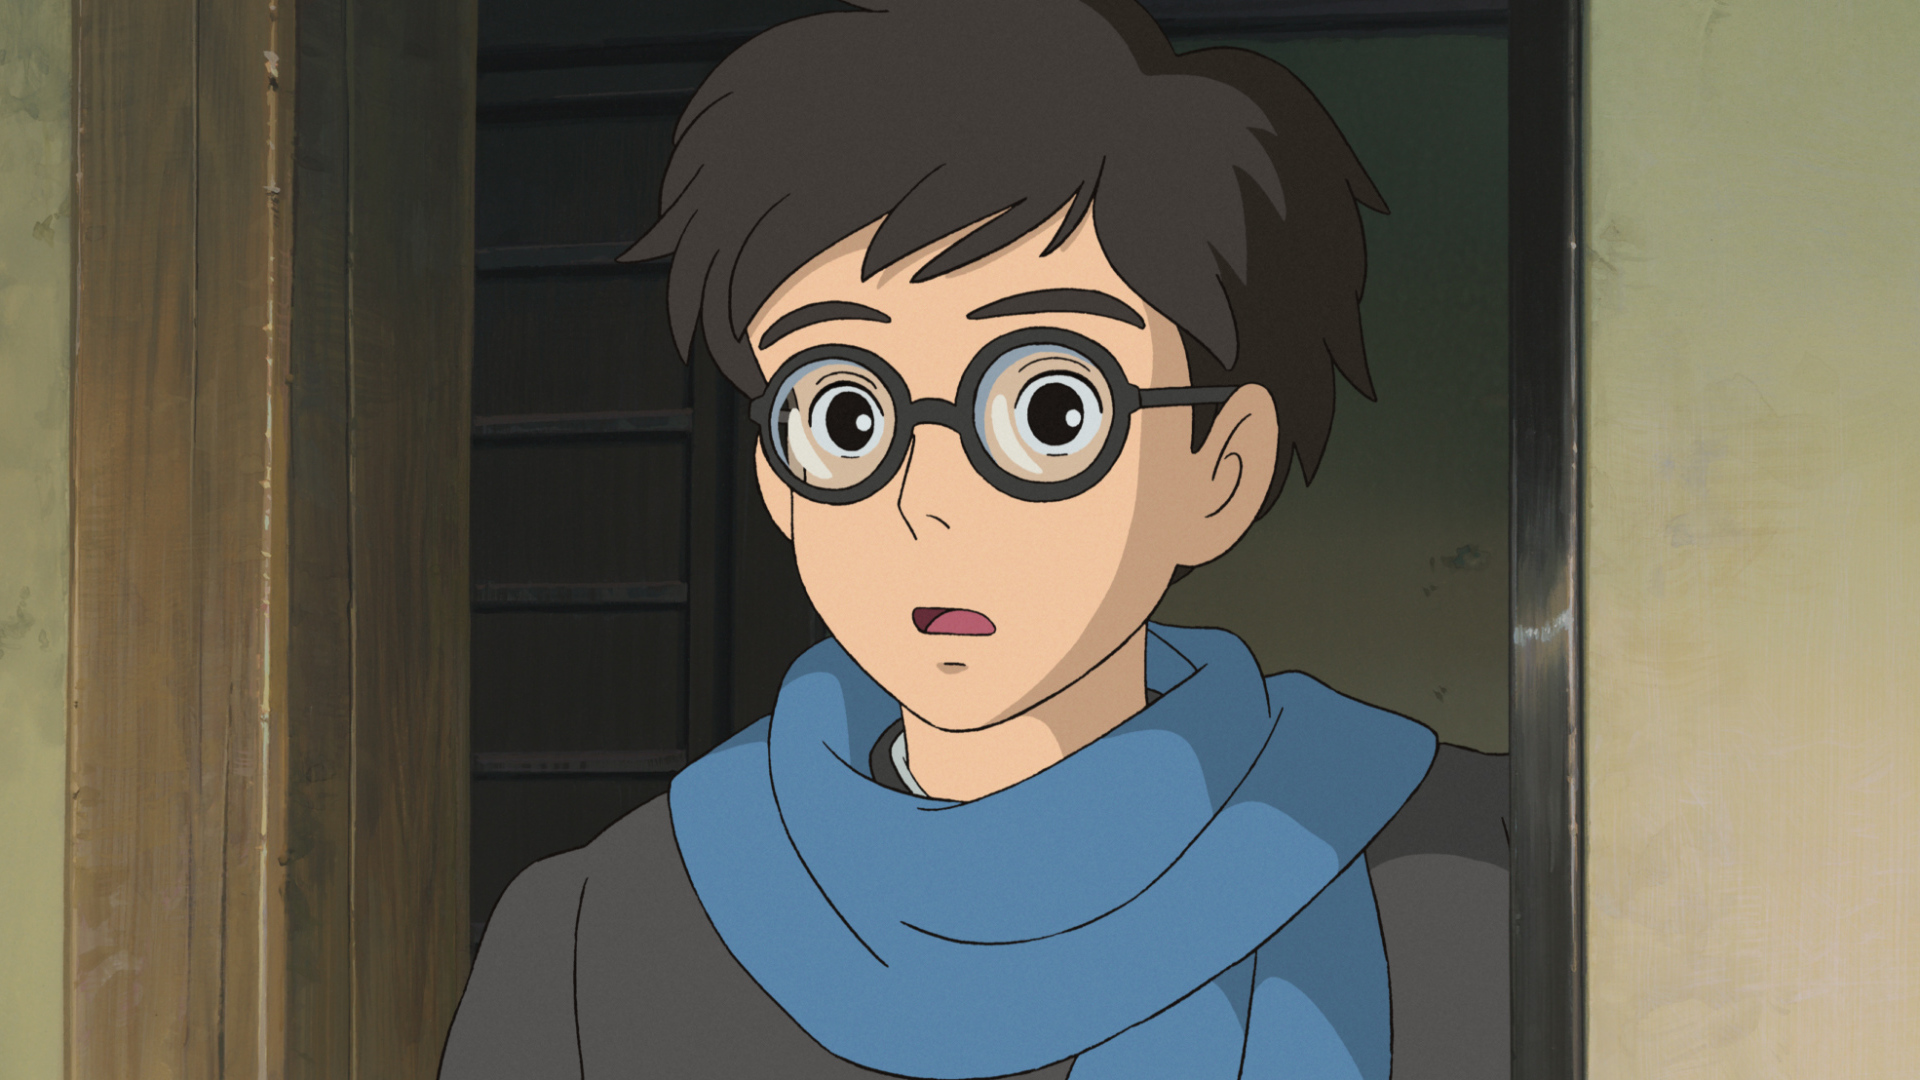 Miyazaki Kaze tachinu, a boy with glasses